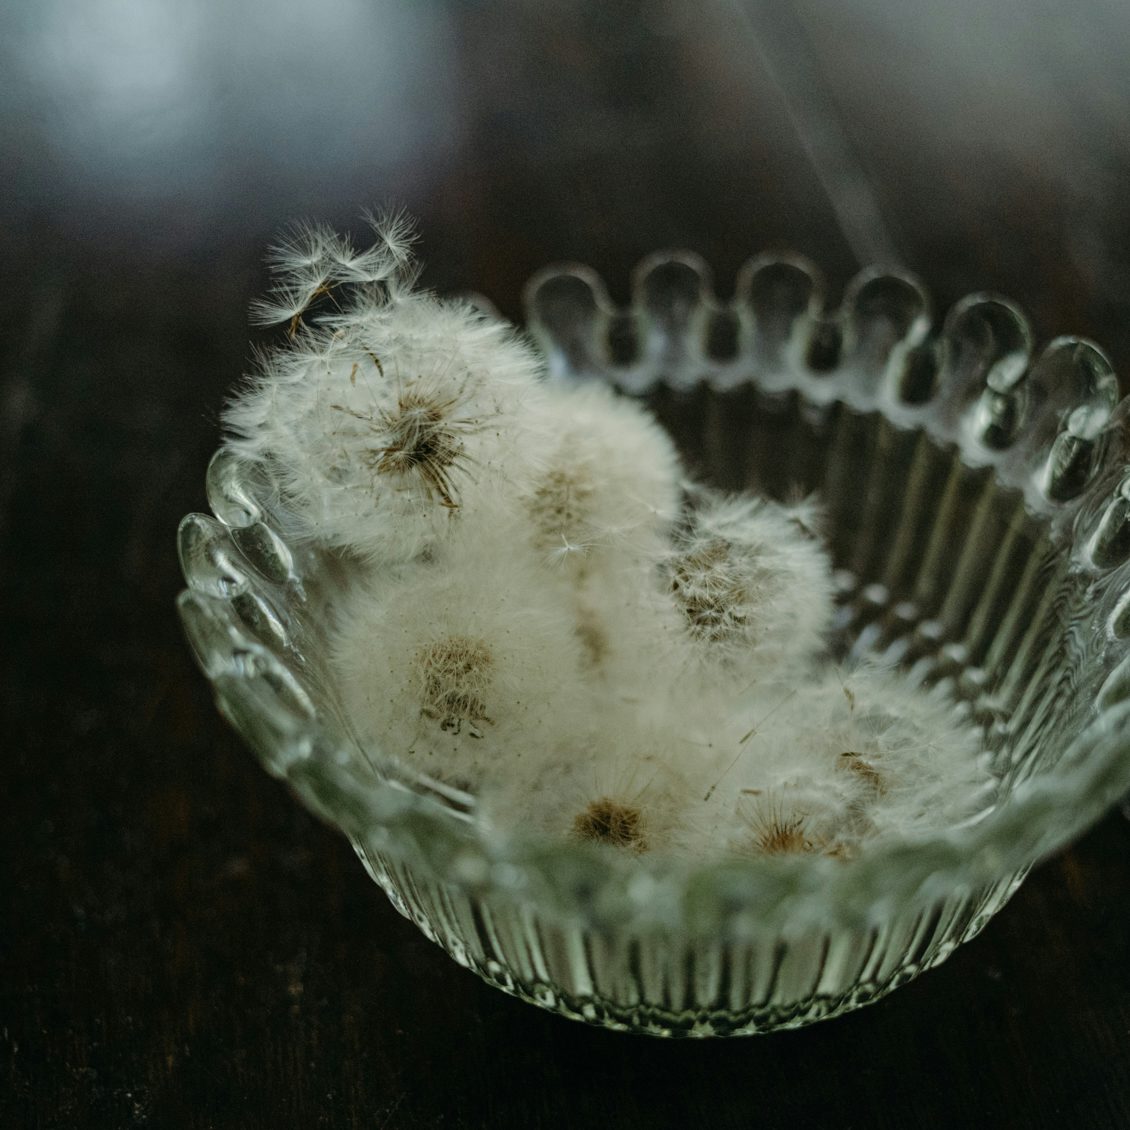 愛しい花仕事 後編 かわいらしい綿毛に思わずキュン ドライたんぽぽの作り方 北欧 暮らしの道具店